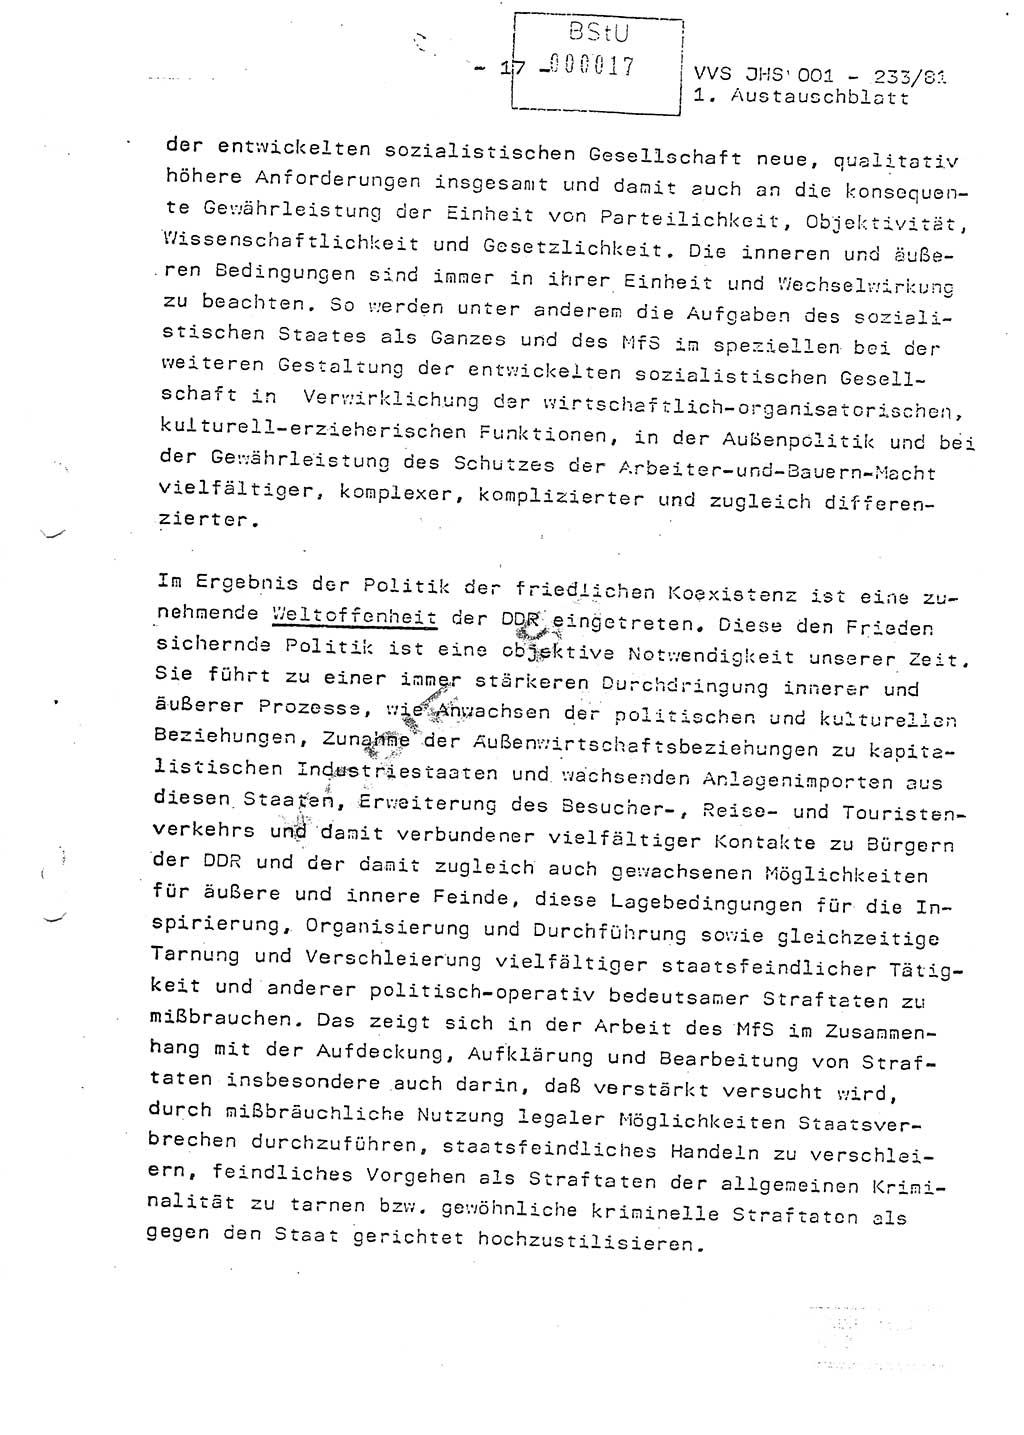 Dissertation Oberstleutnant Horst Zank (JHS), Oberstleutnant Dr. Karl-Heinz Knoblauch (JHS), Oberstleutnant Gustav-Adolf Kowalewski (HA Ⅸ), Oberstleutnant Wolfgang Plötner (HA Ⅸ), Ministerium für Staatssicherheit (MfS) [Deutsche Demokratische Republik (DDR)], Juristische Hochschule (JHS), Vertrauliche Verschlußsache (VVS) o001-233/81, Potsdam 1981, Blatt 17 (Diss. MfS DDR JHS VVS o001-233/81 1981, Bl. 17)